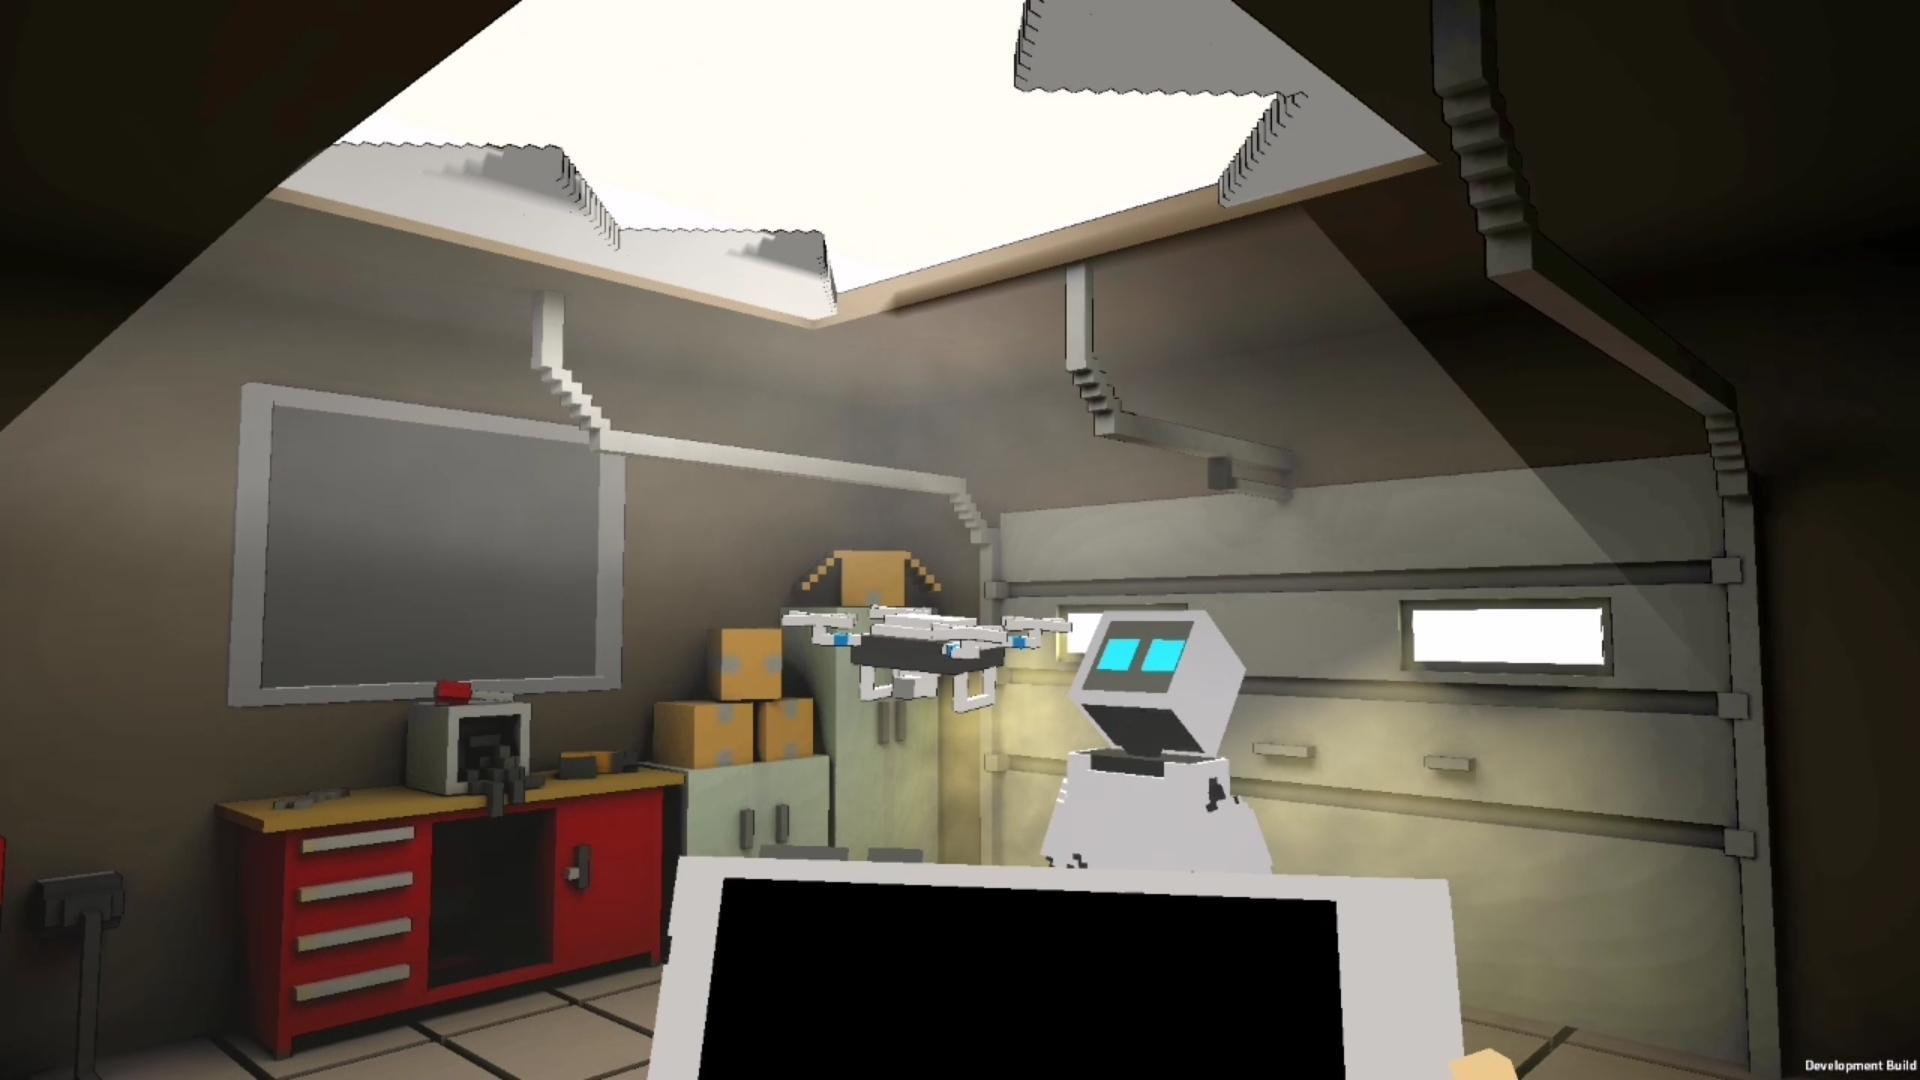 Screenshot 1 of Robot Battle 1-4 jogador offline jogo multijogador 0.14